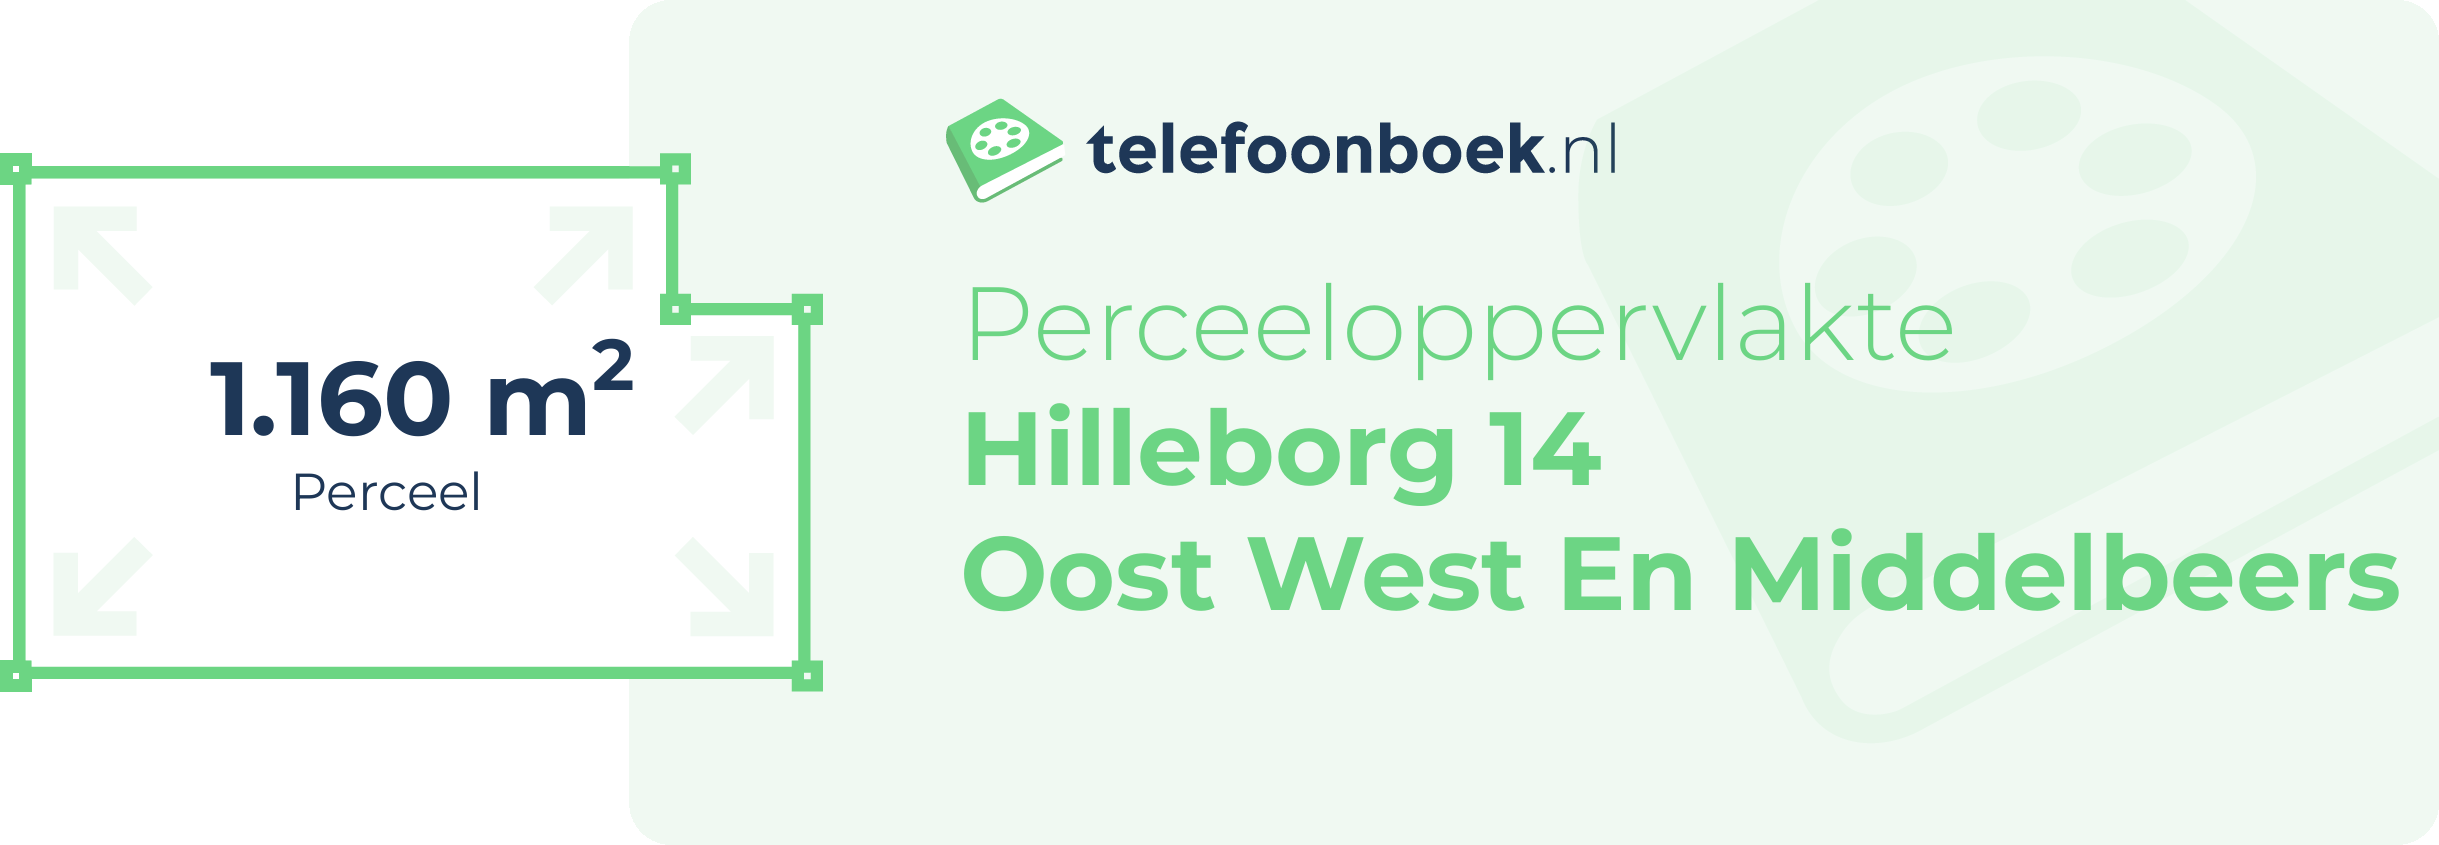 Perceeloppervlakte Hilleborg 14 Oost West En Middelbeers